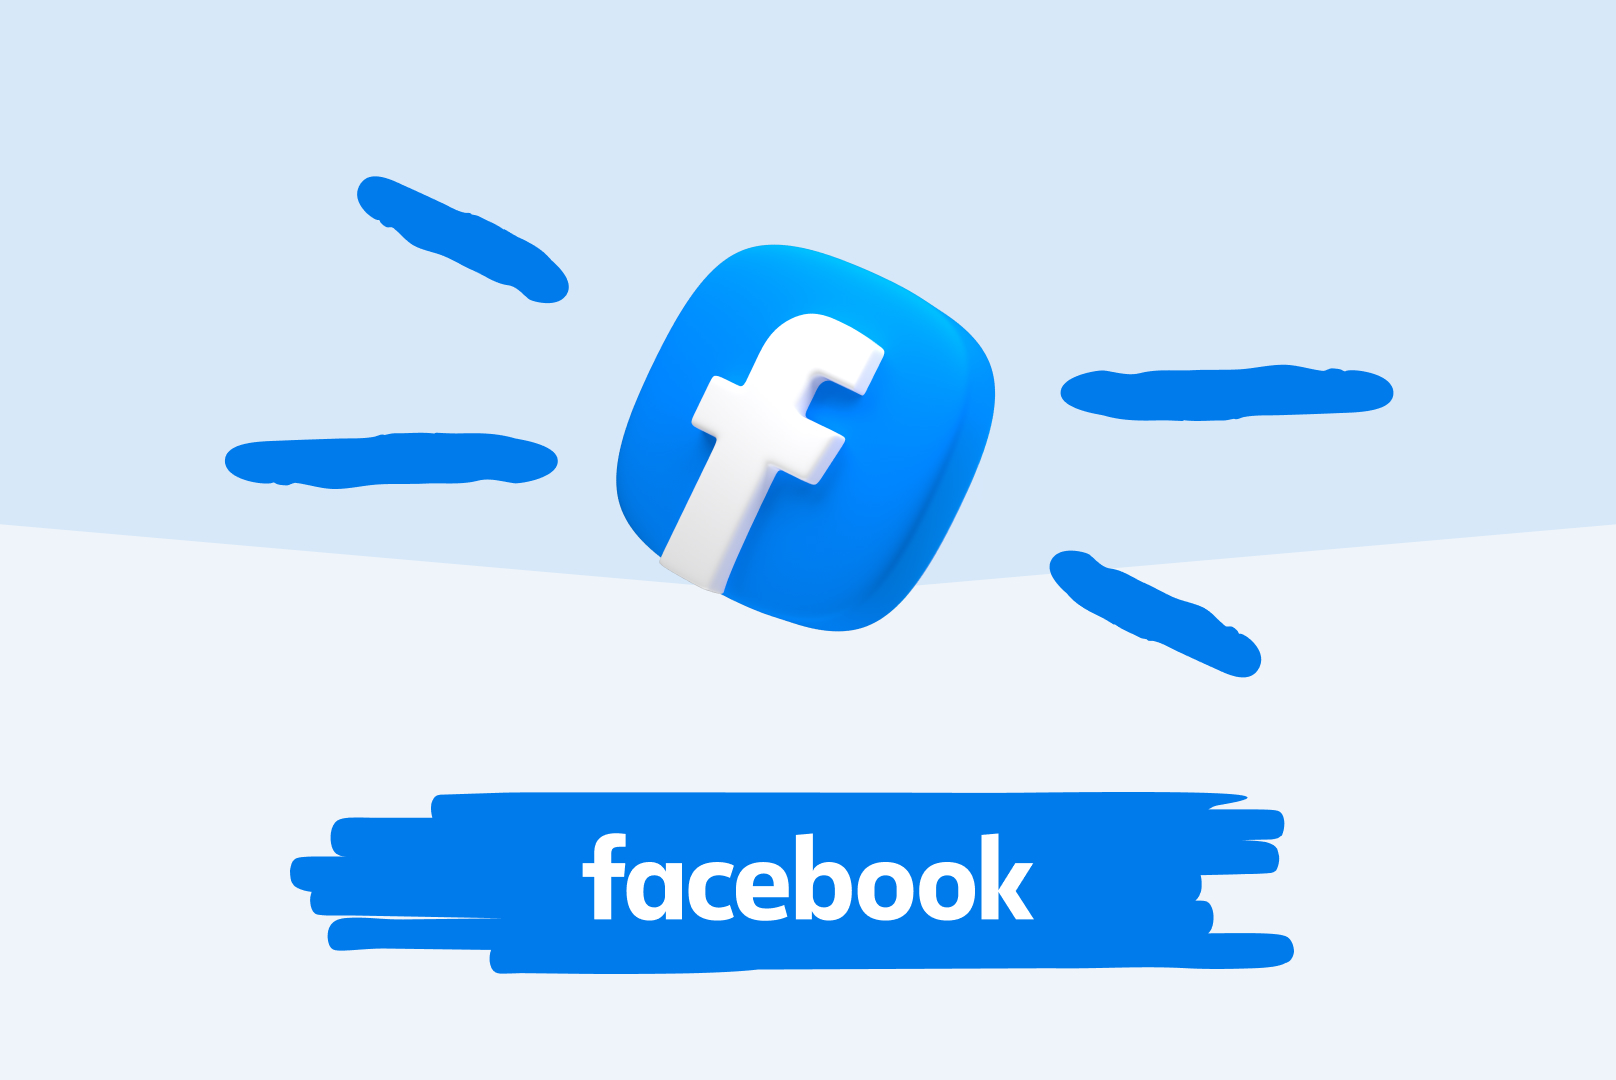 Illustration contenant le logo de Facebook pour l'article "Faire de la publicité sur Facebook" de Lemon Interactive